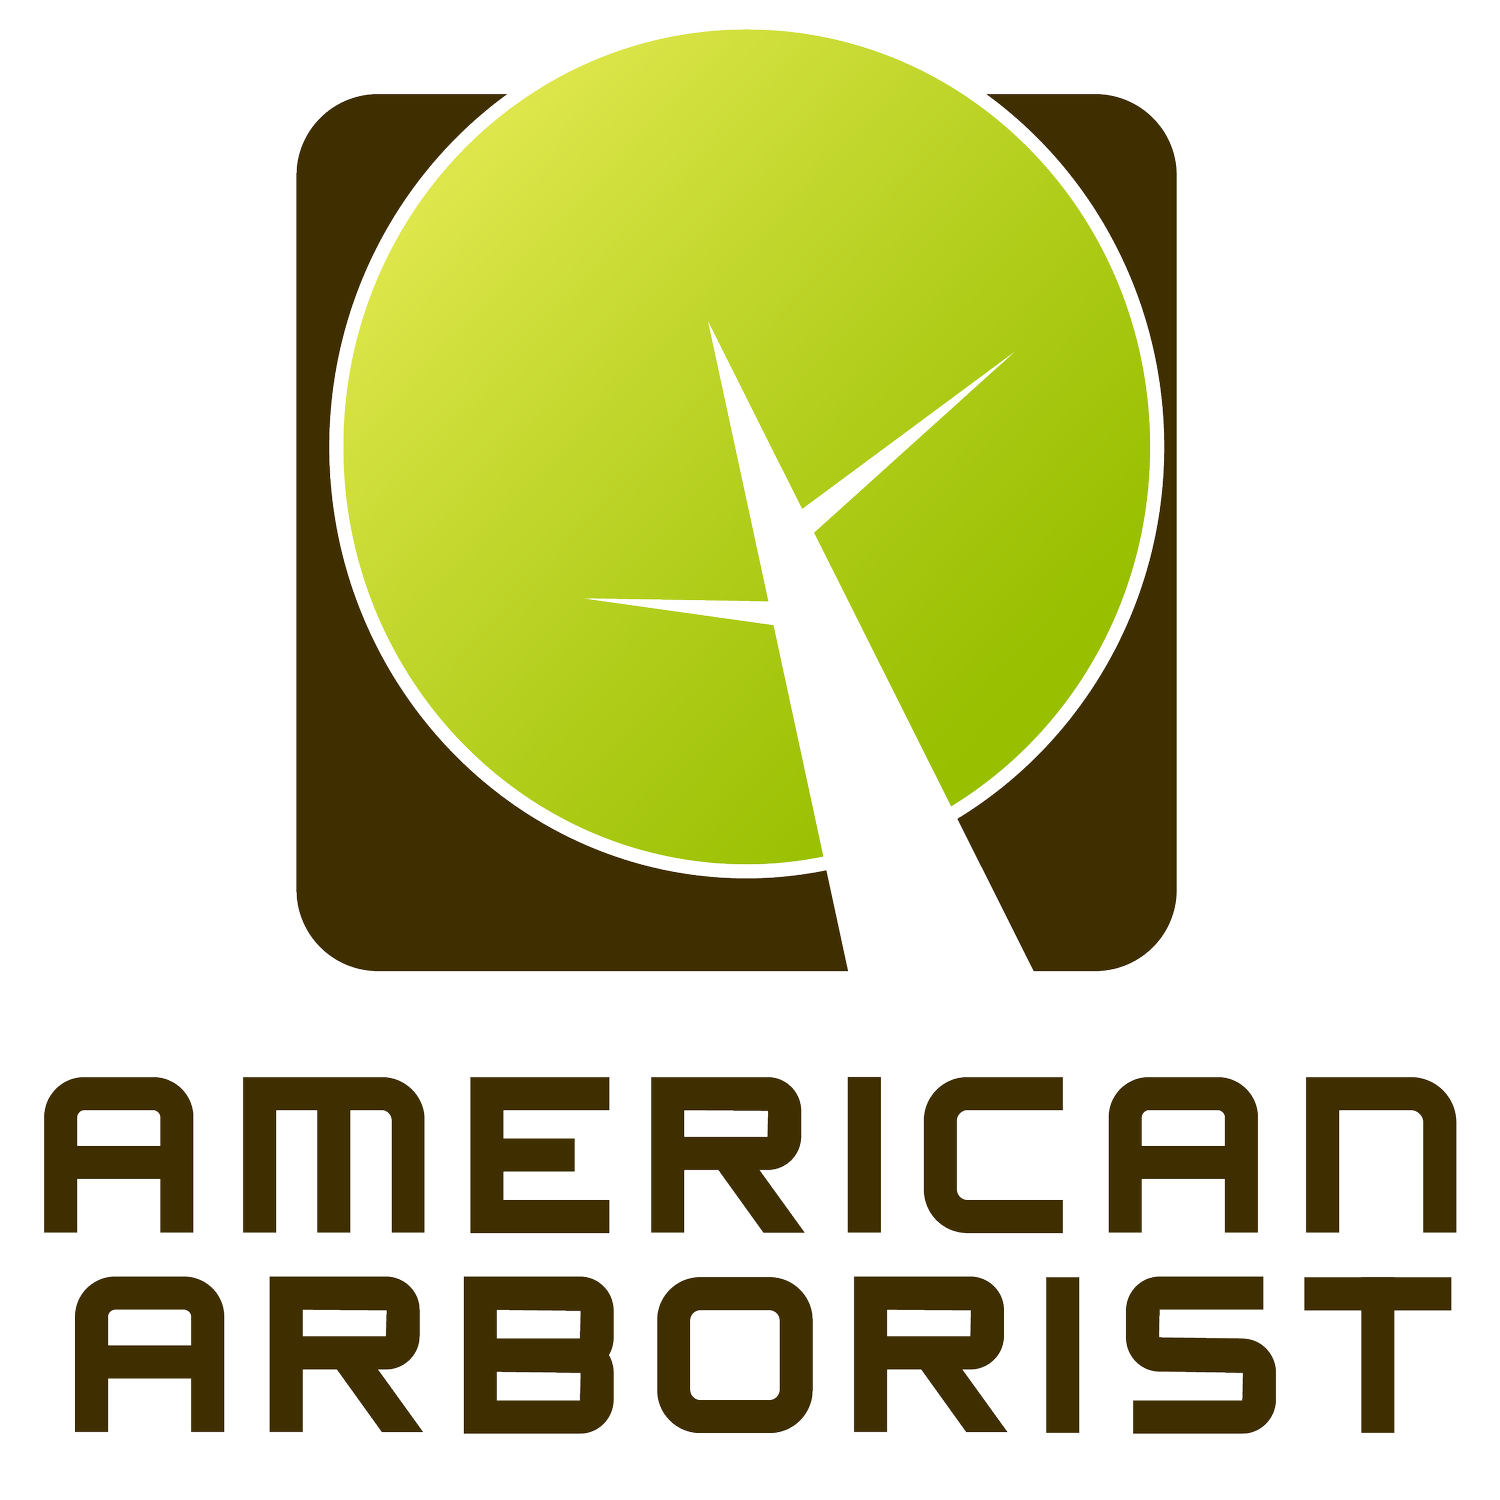 American Arborist